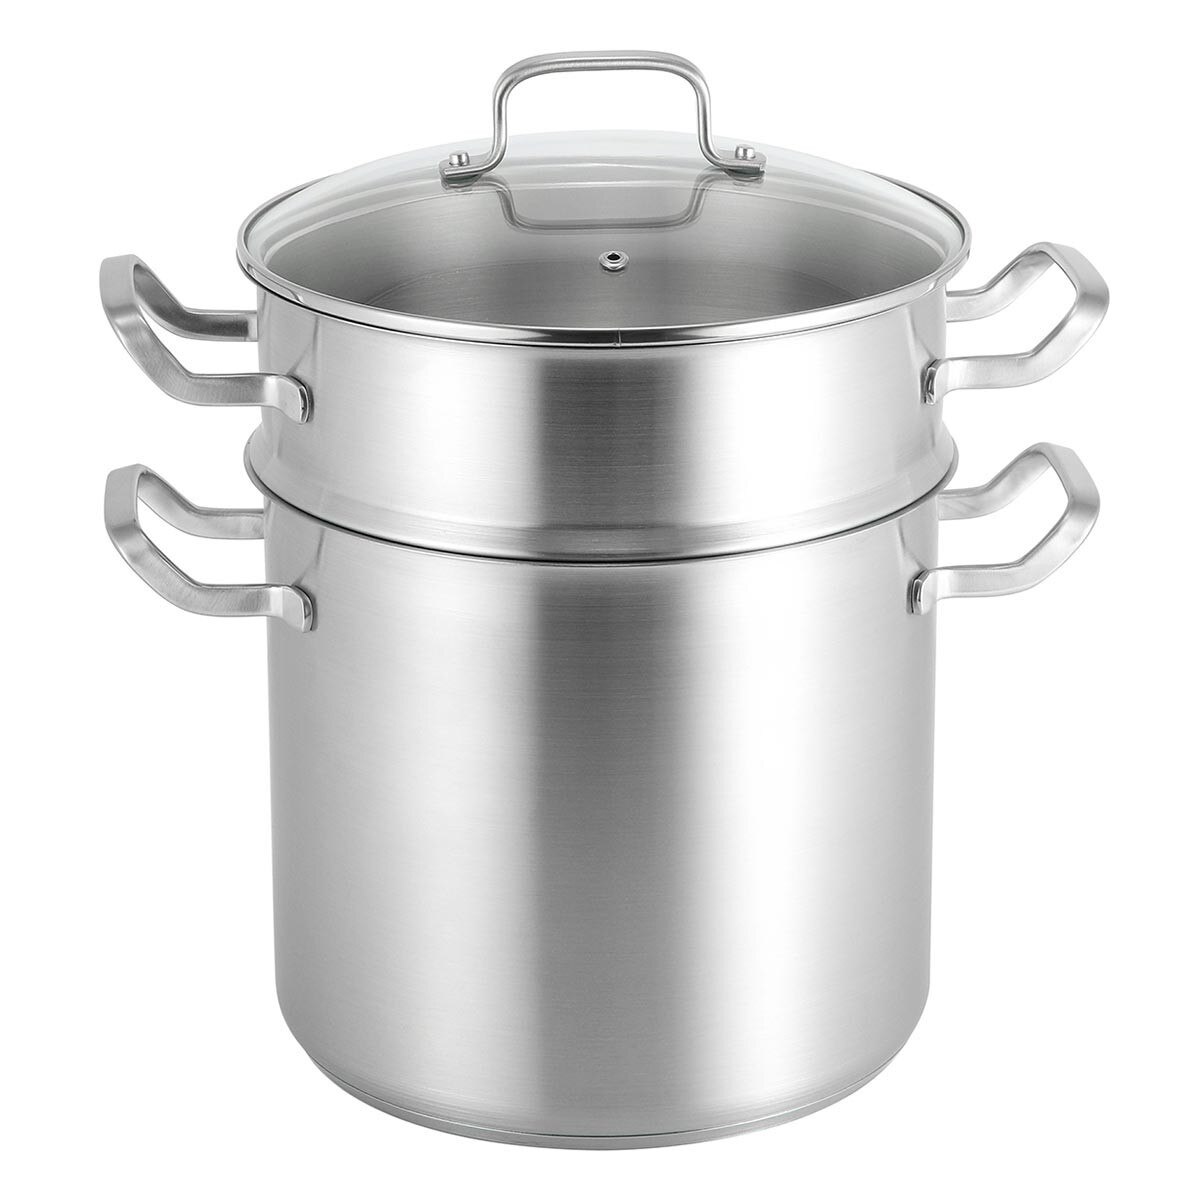 不鏽鋼湯鍋含蓋附蒸籠 24公分